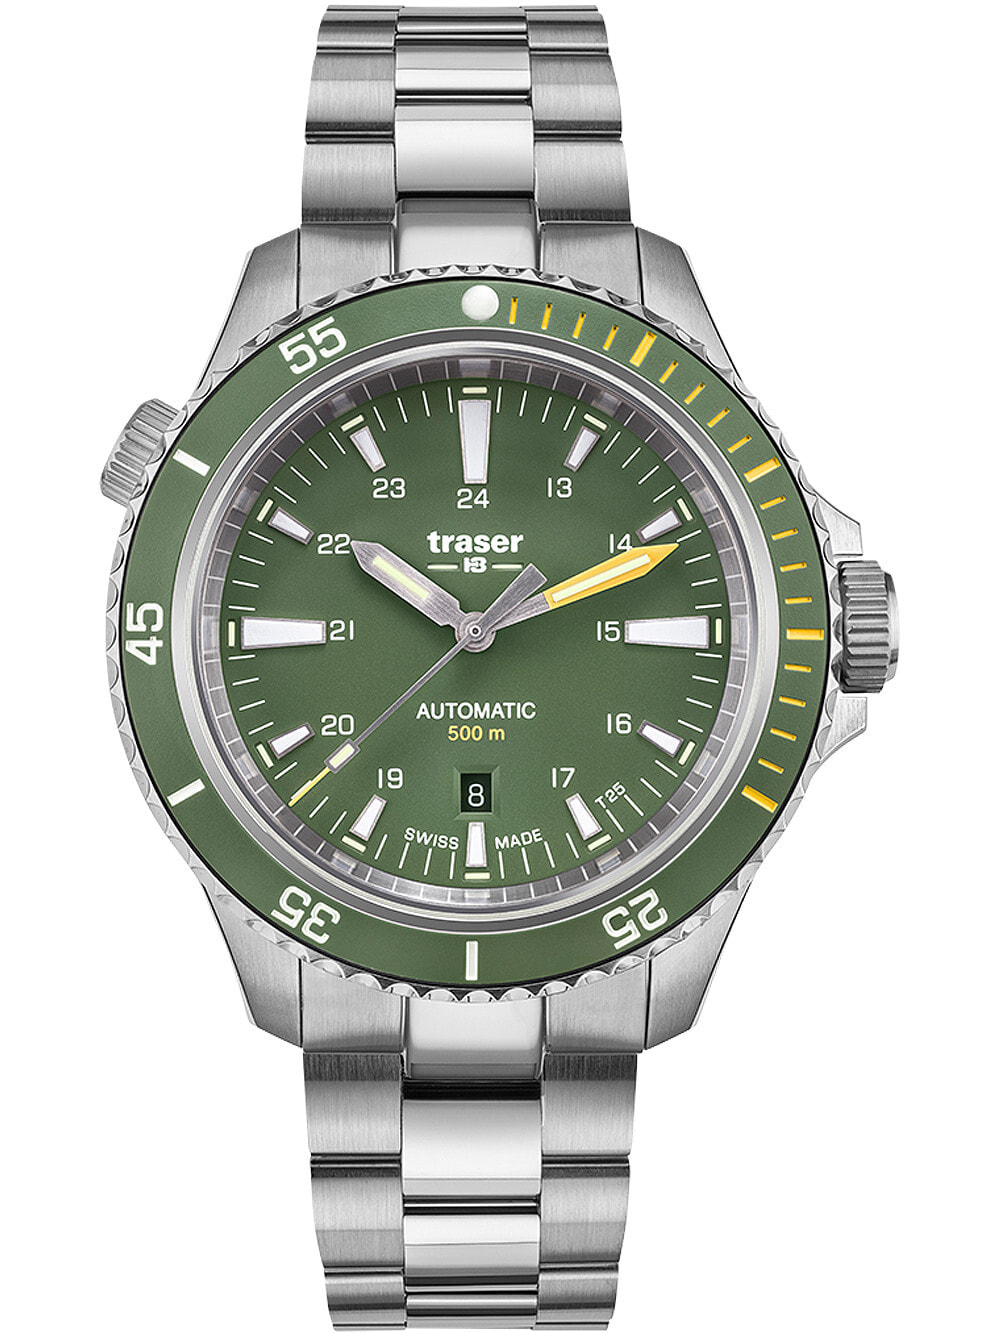 Мужские наручные часы с серебряным браслетом Traser H3 110329 P67 Diver Automatik T100 Grey Special Set 46mm 50ATM